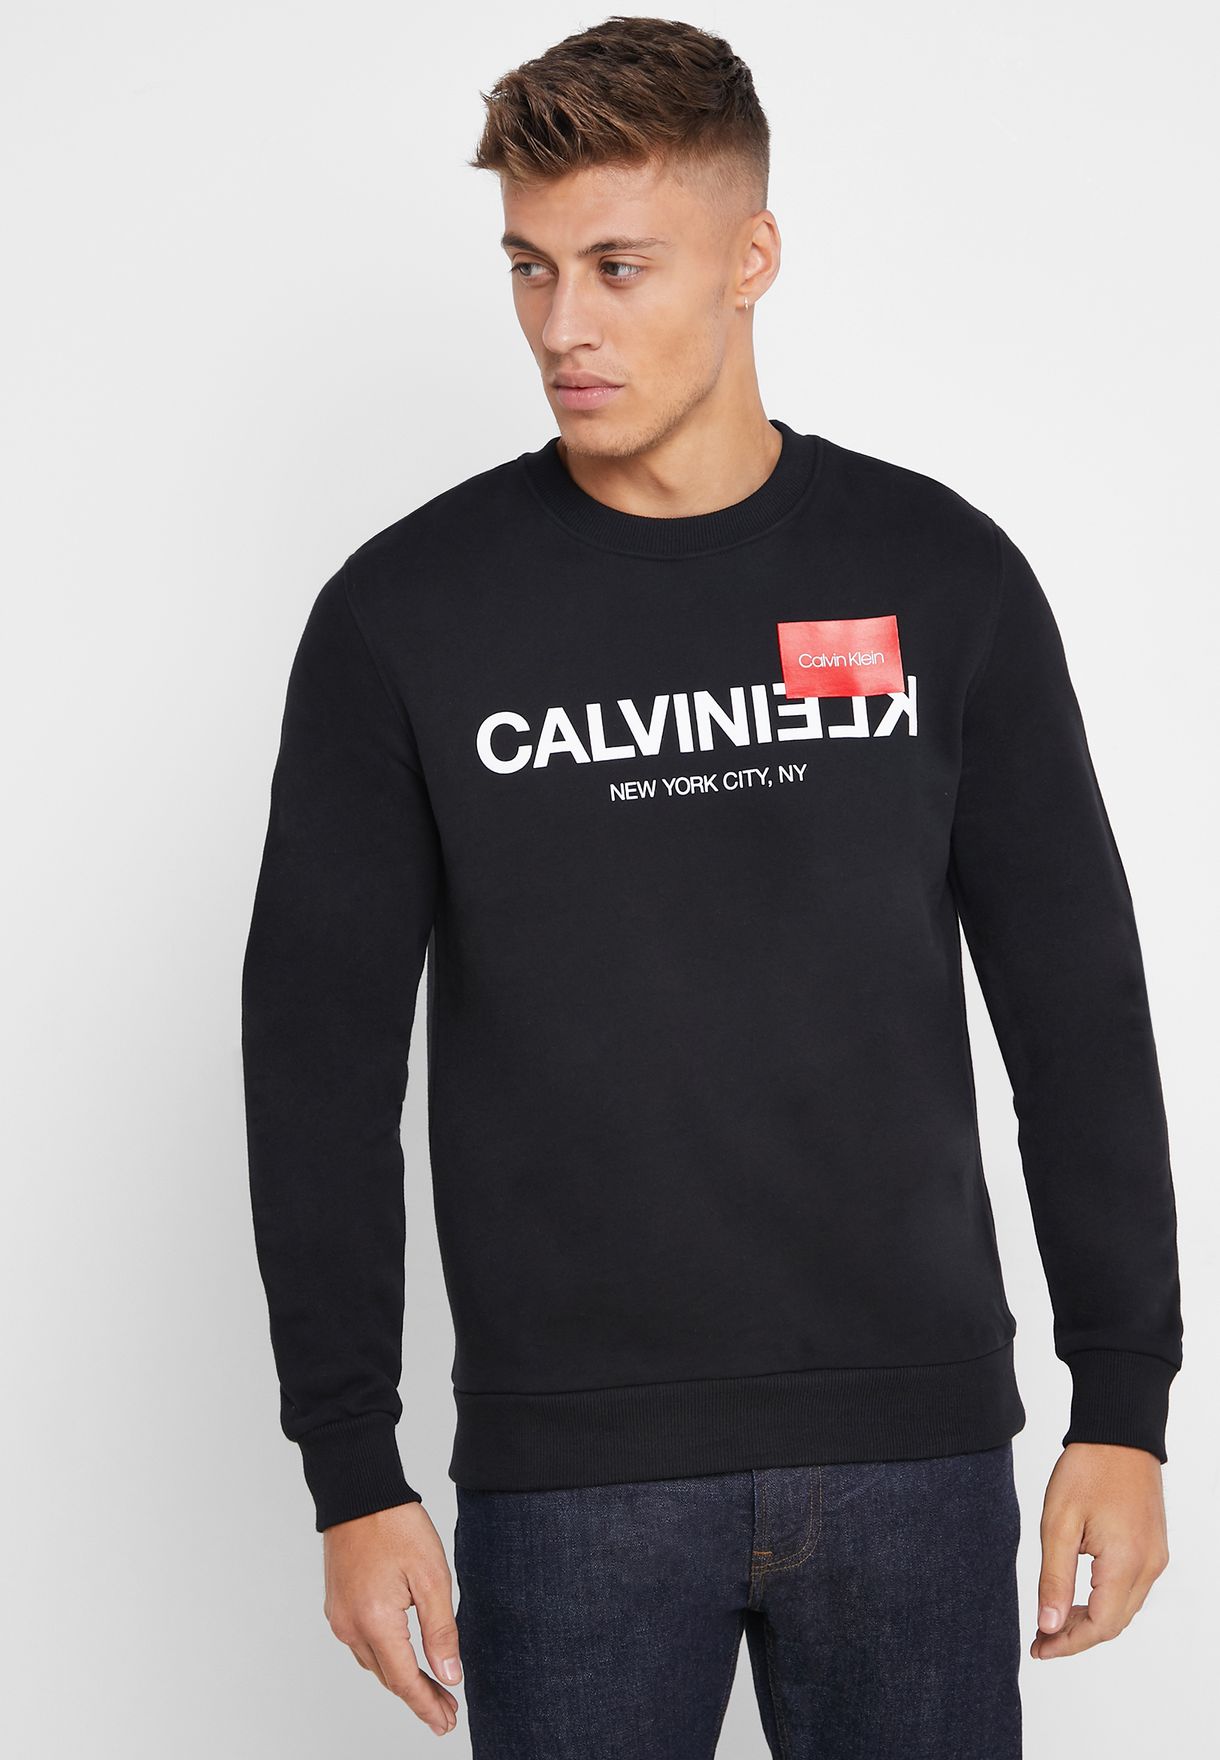 Calvin Klein Logo Sweatshirt Online, 58% OFF | www 